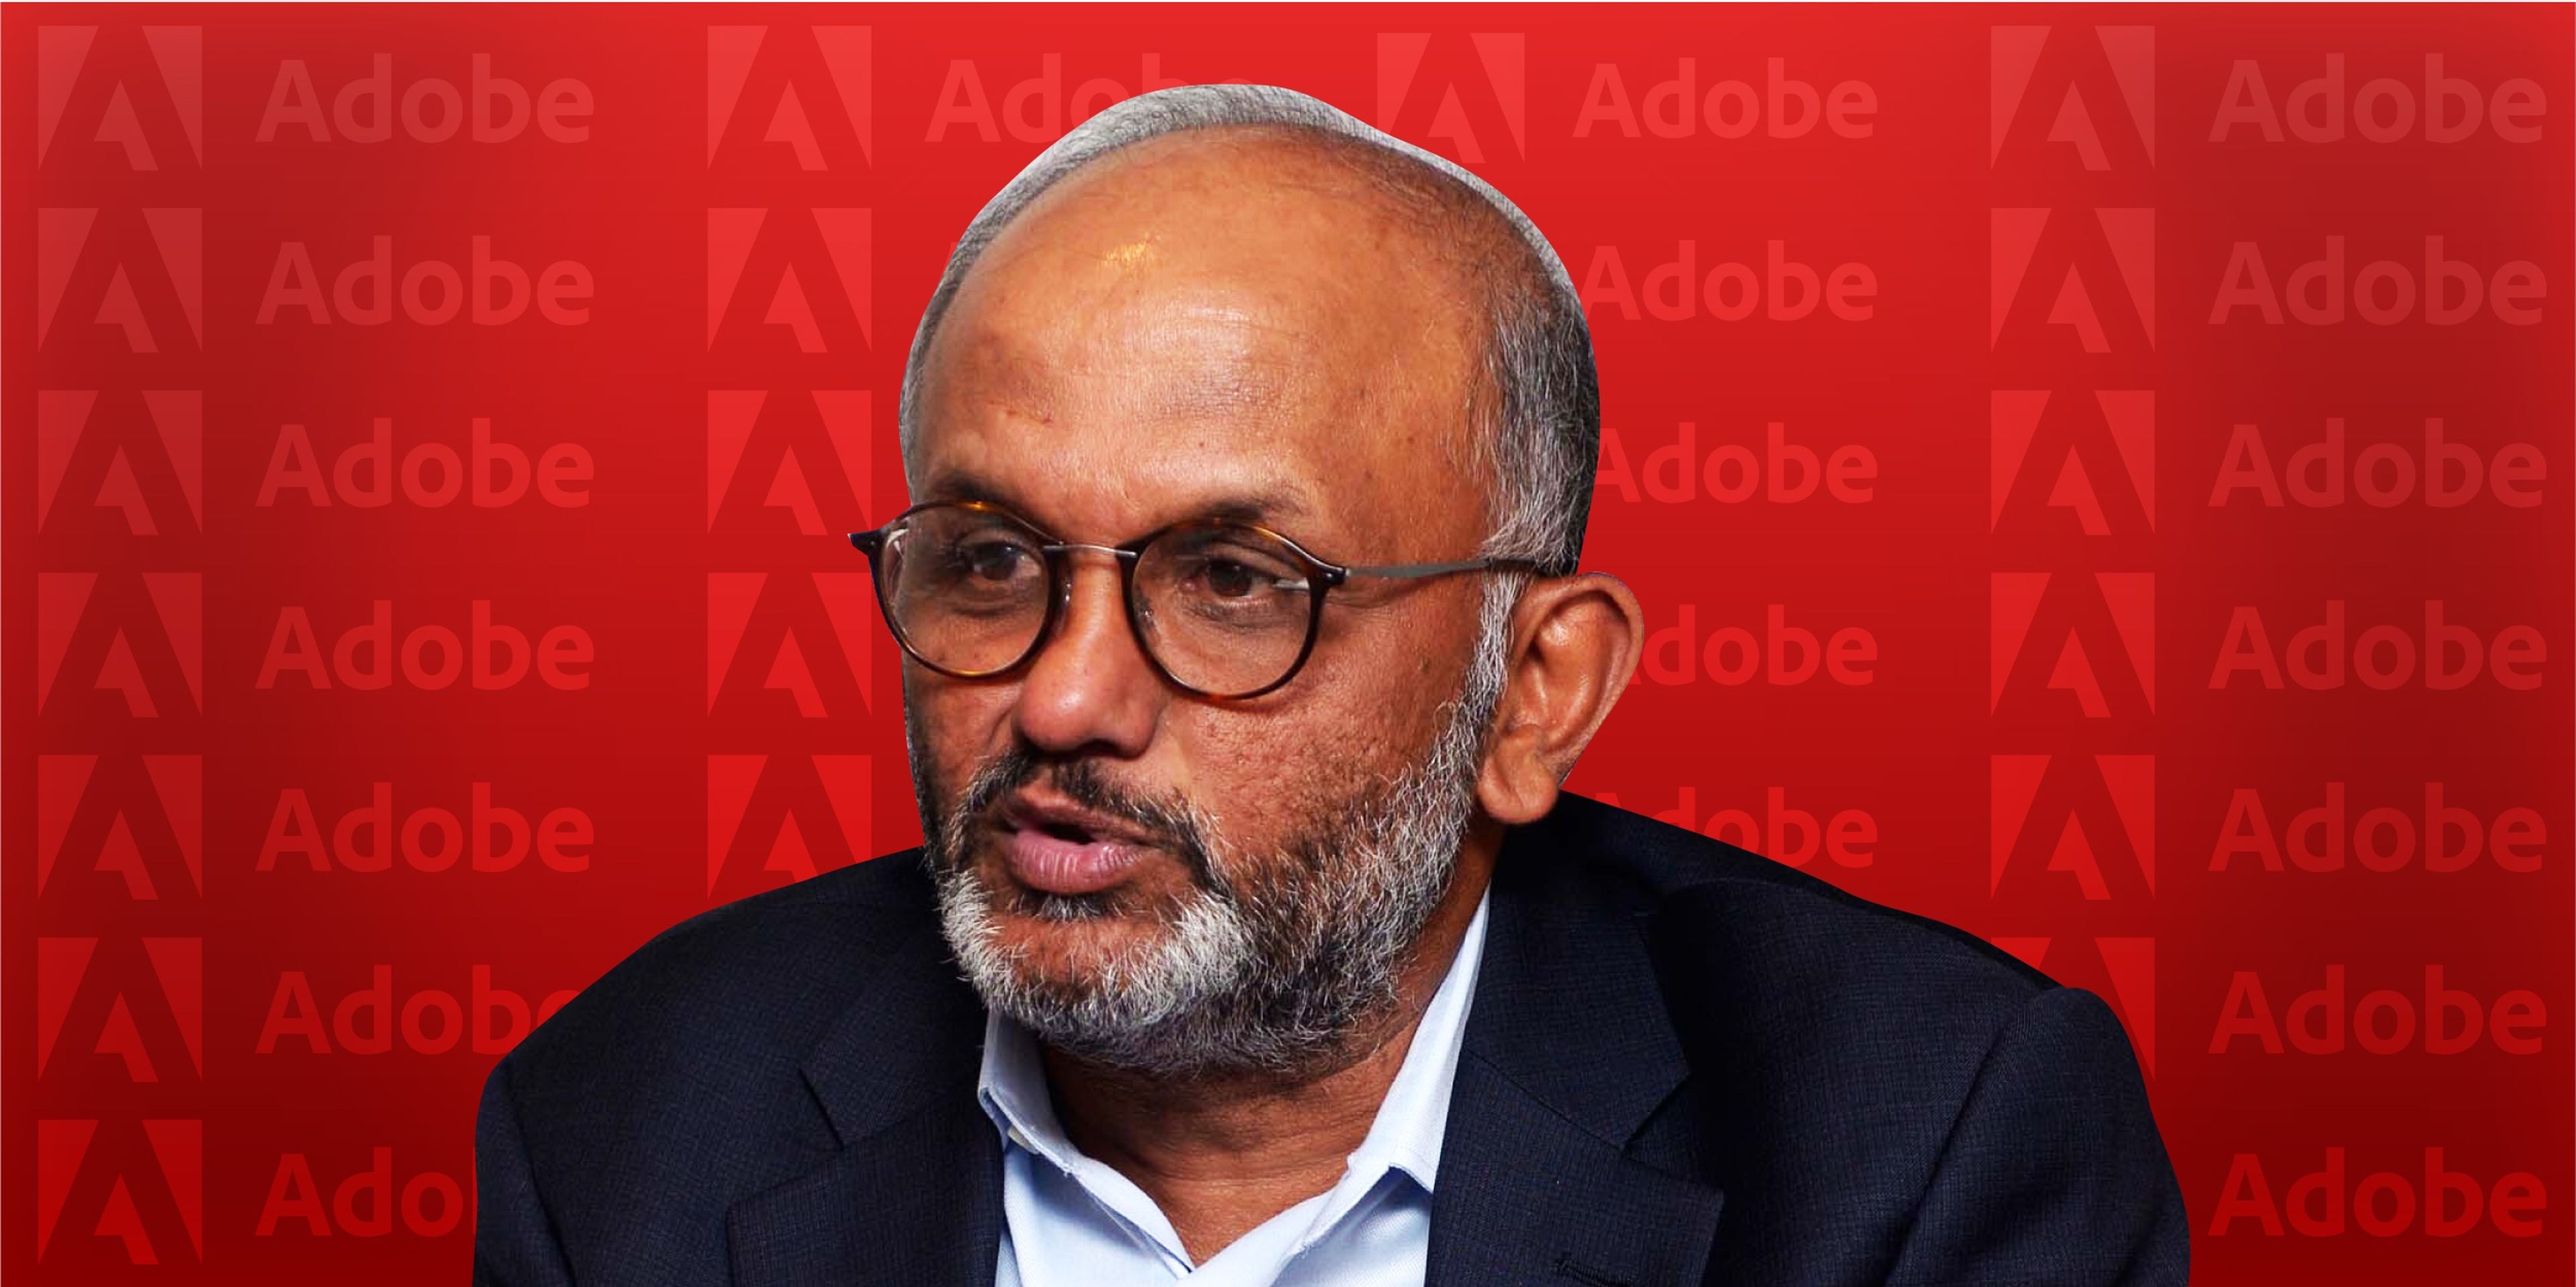 Shantanu Narayen ha sido director general de Adobe durante 15 años.